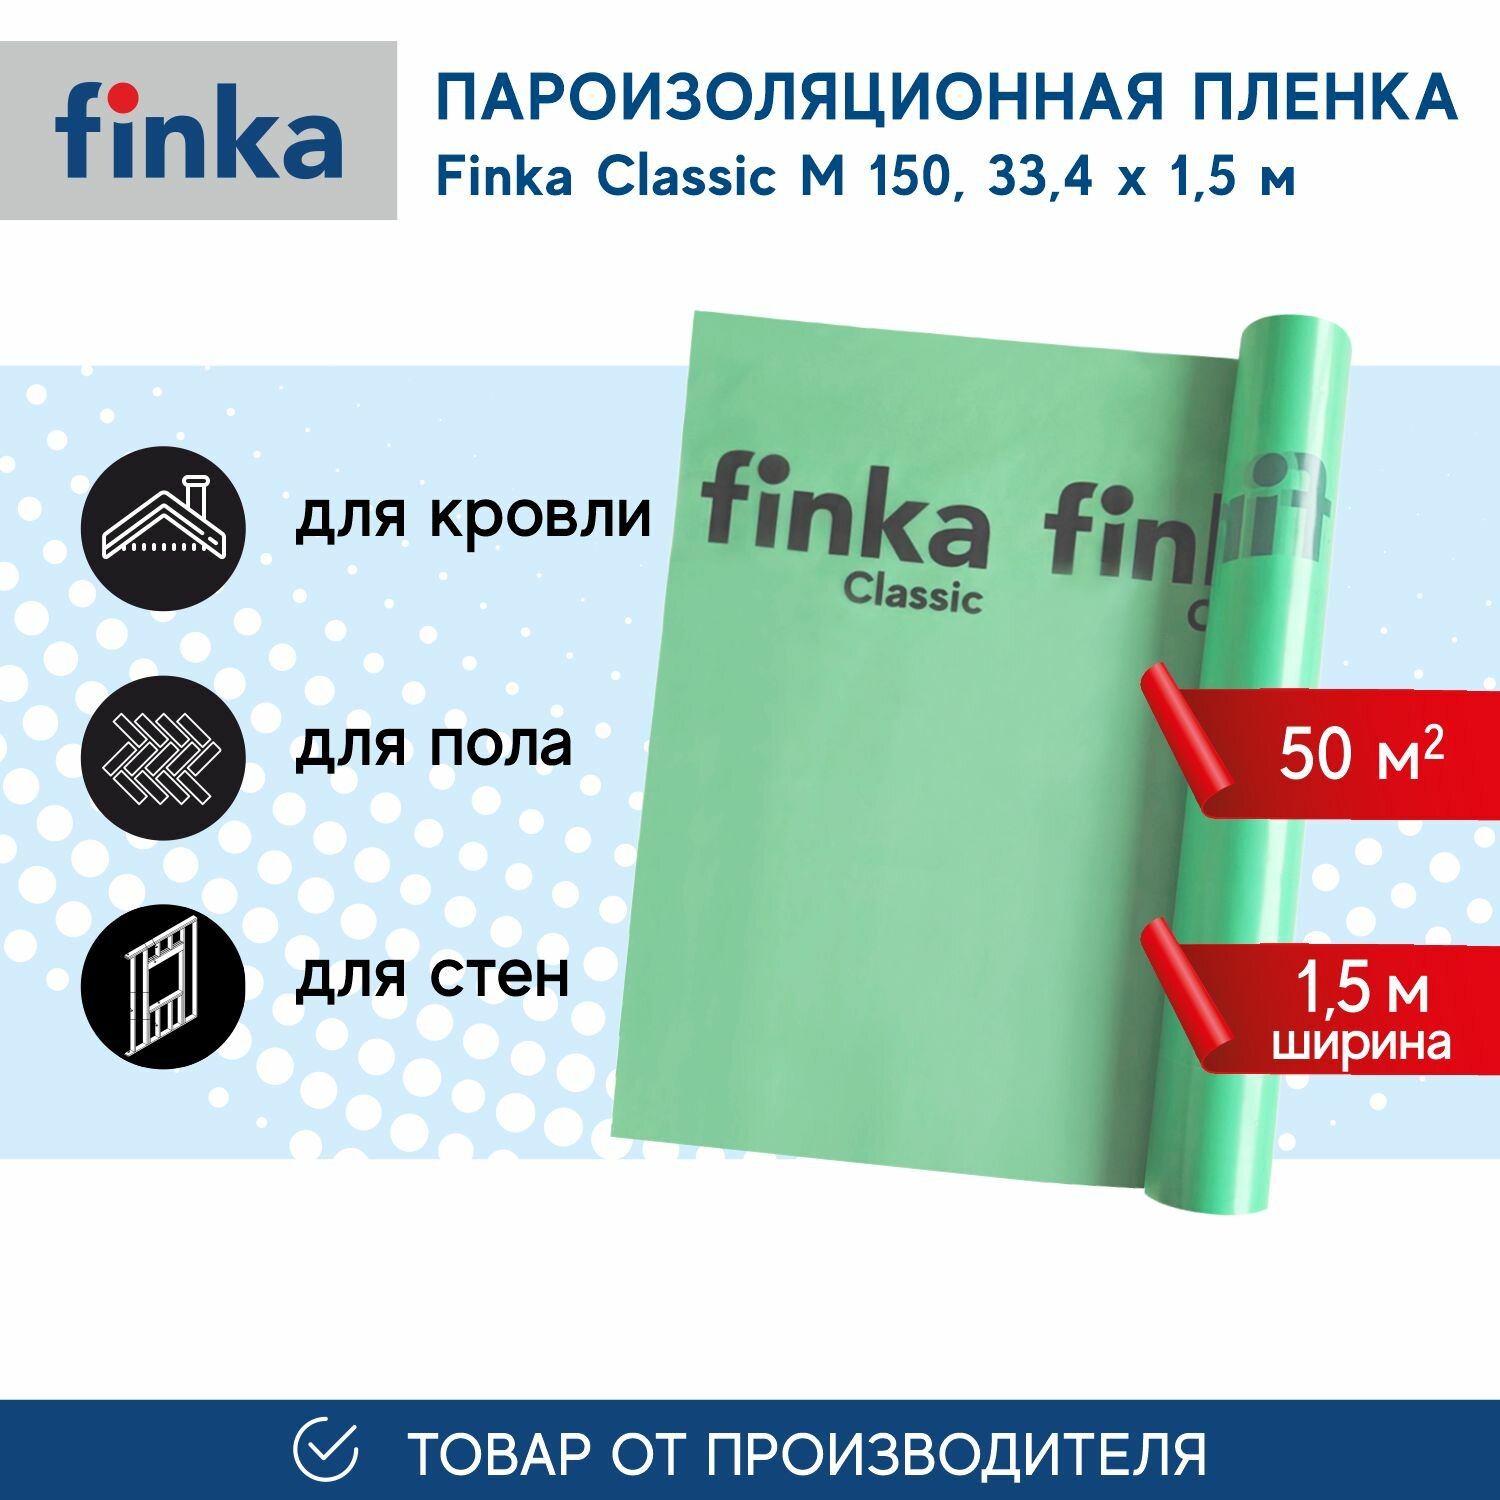 Пароизоляционная пленка Finka Classic M, 50м2